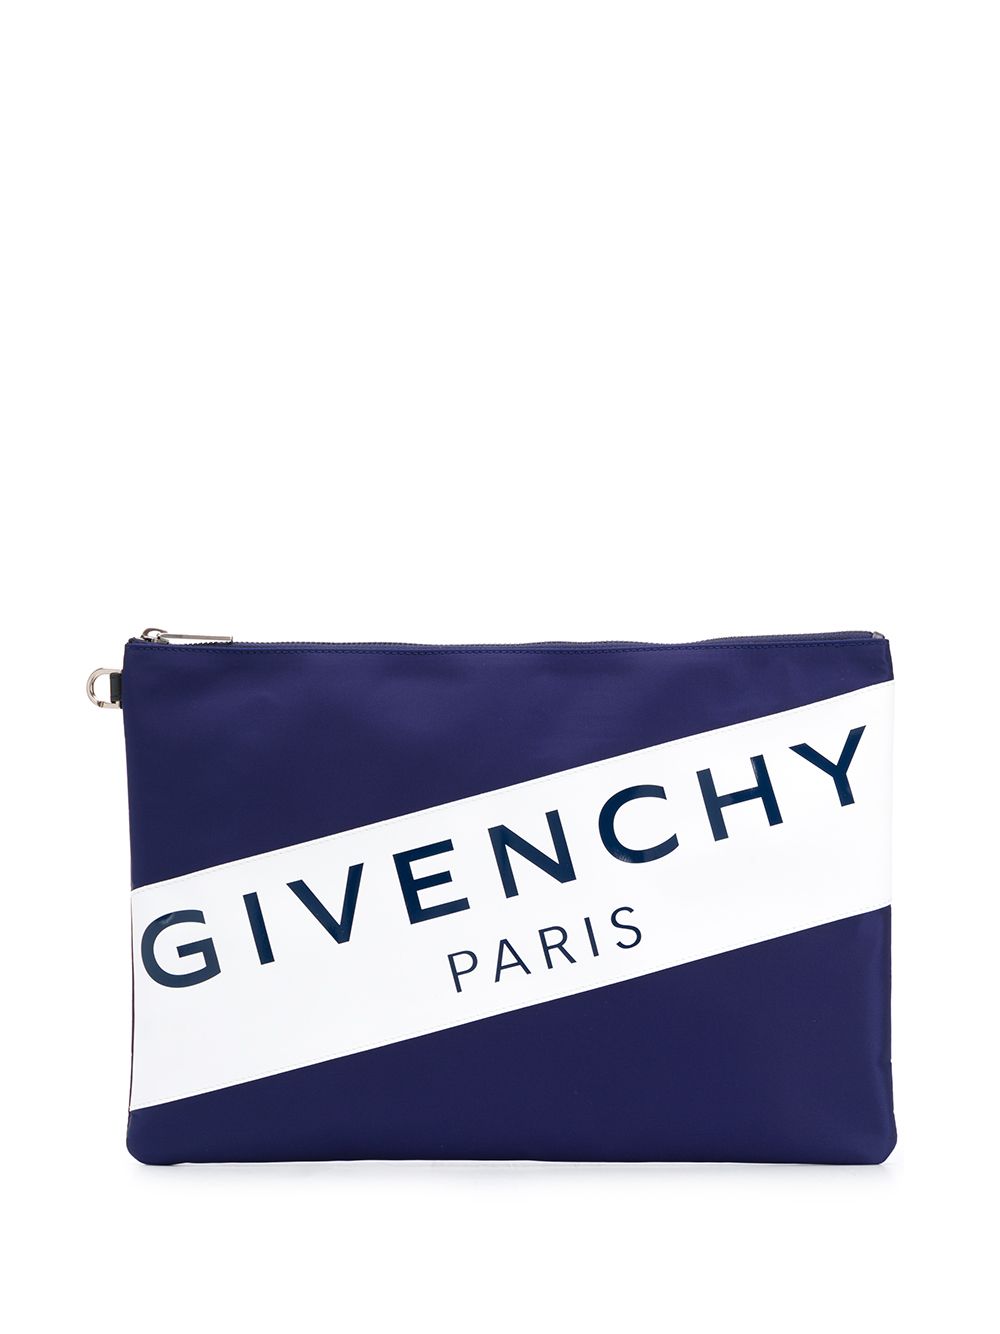 фото Givenchy клатч на молнии с логотипом